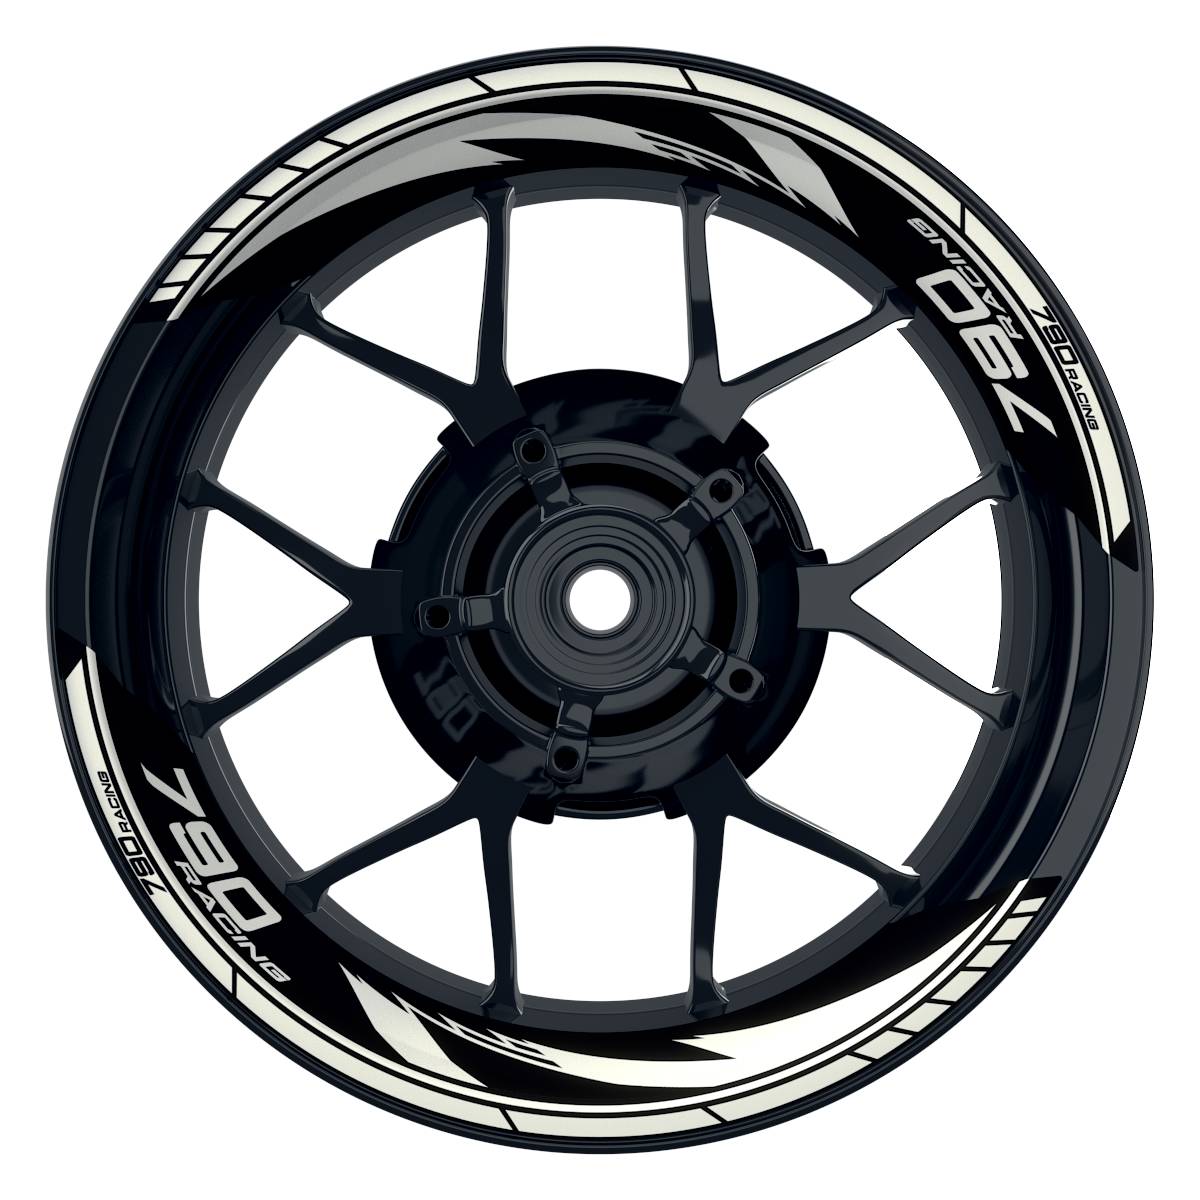 KTM Racing 790 Razor schwarz weiss Frontansicht